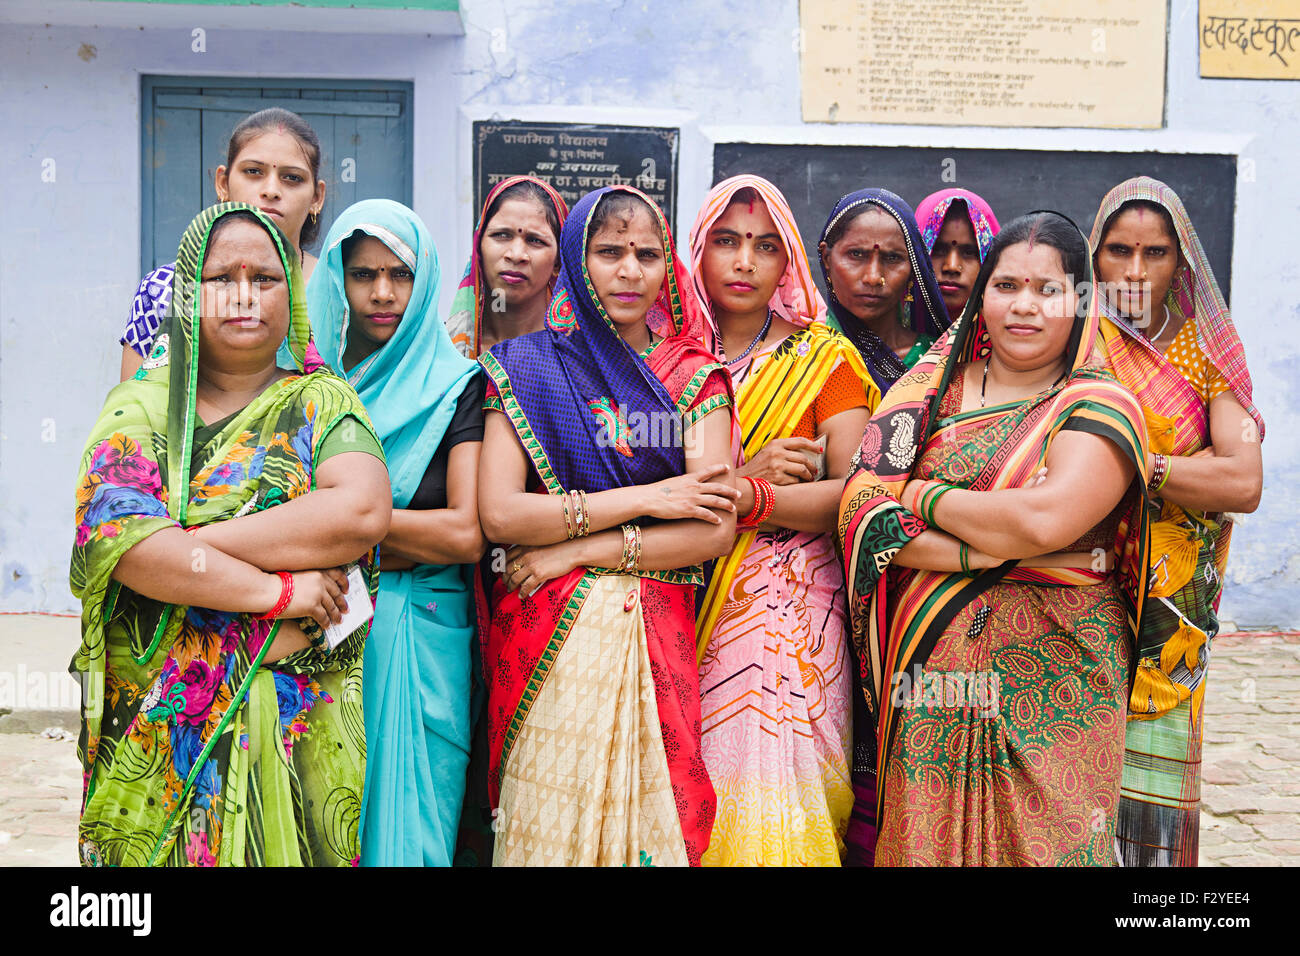 Groupe villageois rural indien femme foule permanent voisin Banque D'Images